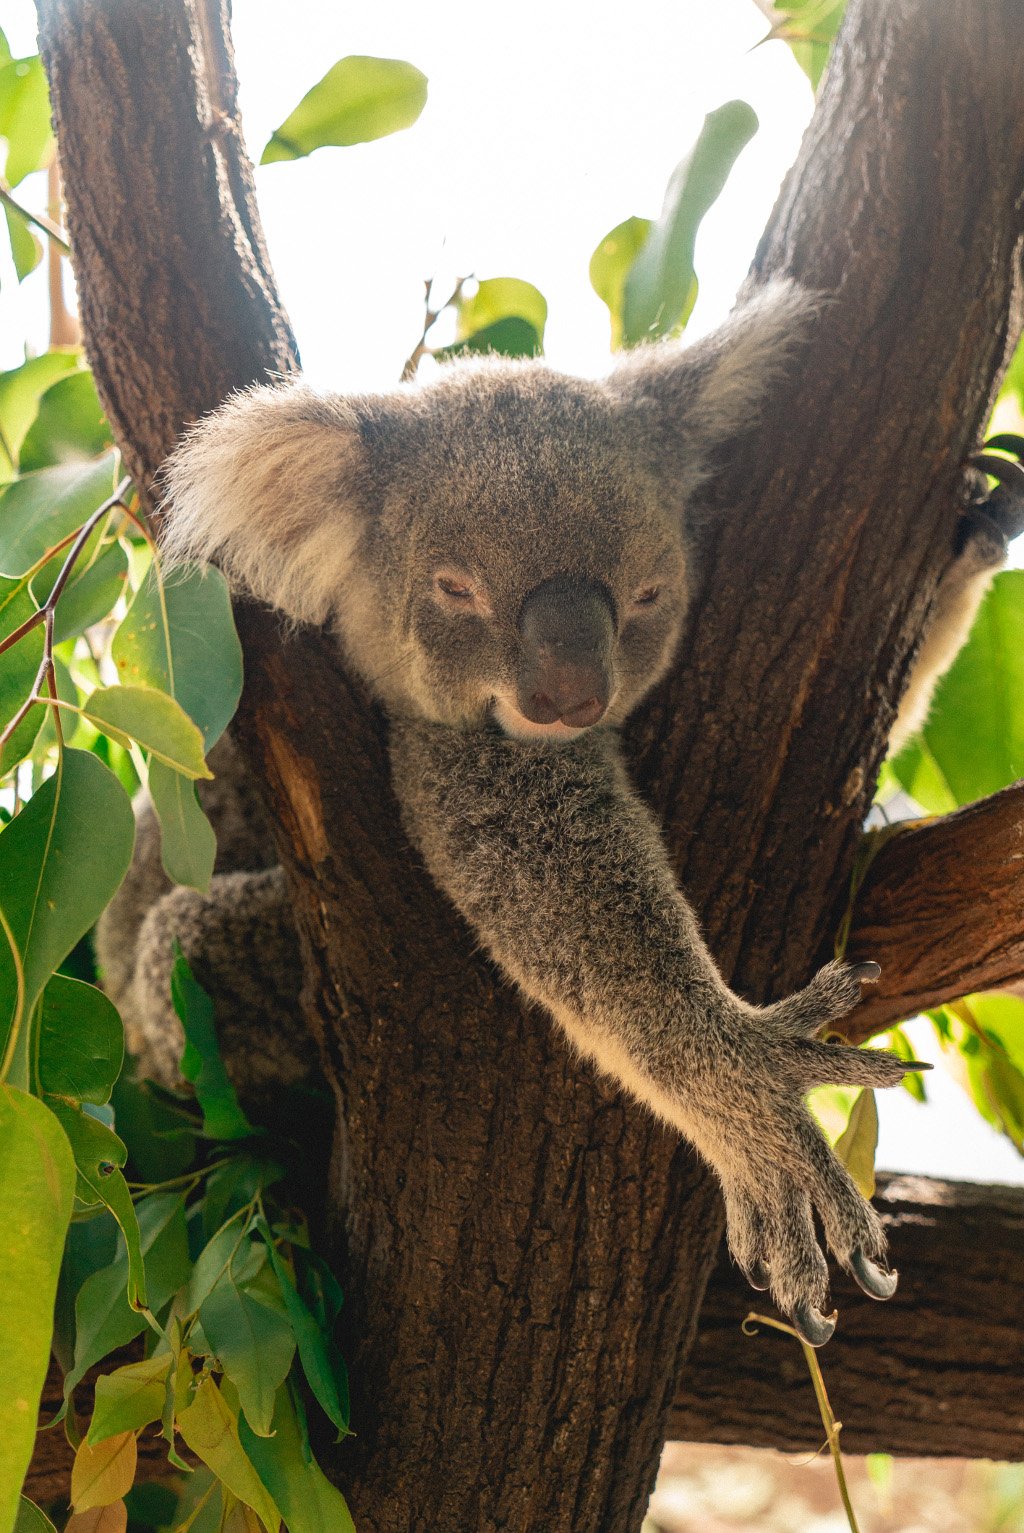 aifs-freiwilligenarbeit-australien-koala-wildlife-habitat-hochkant-quadratisch-1024x1024-1